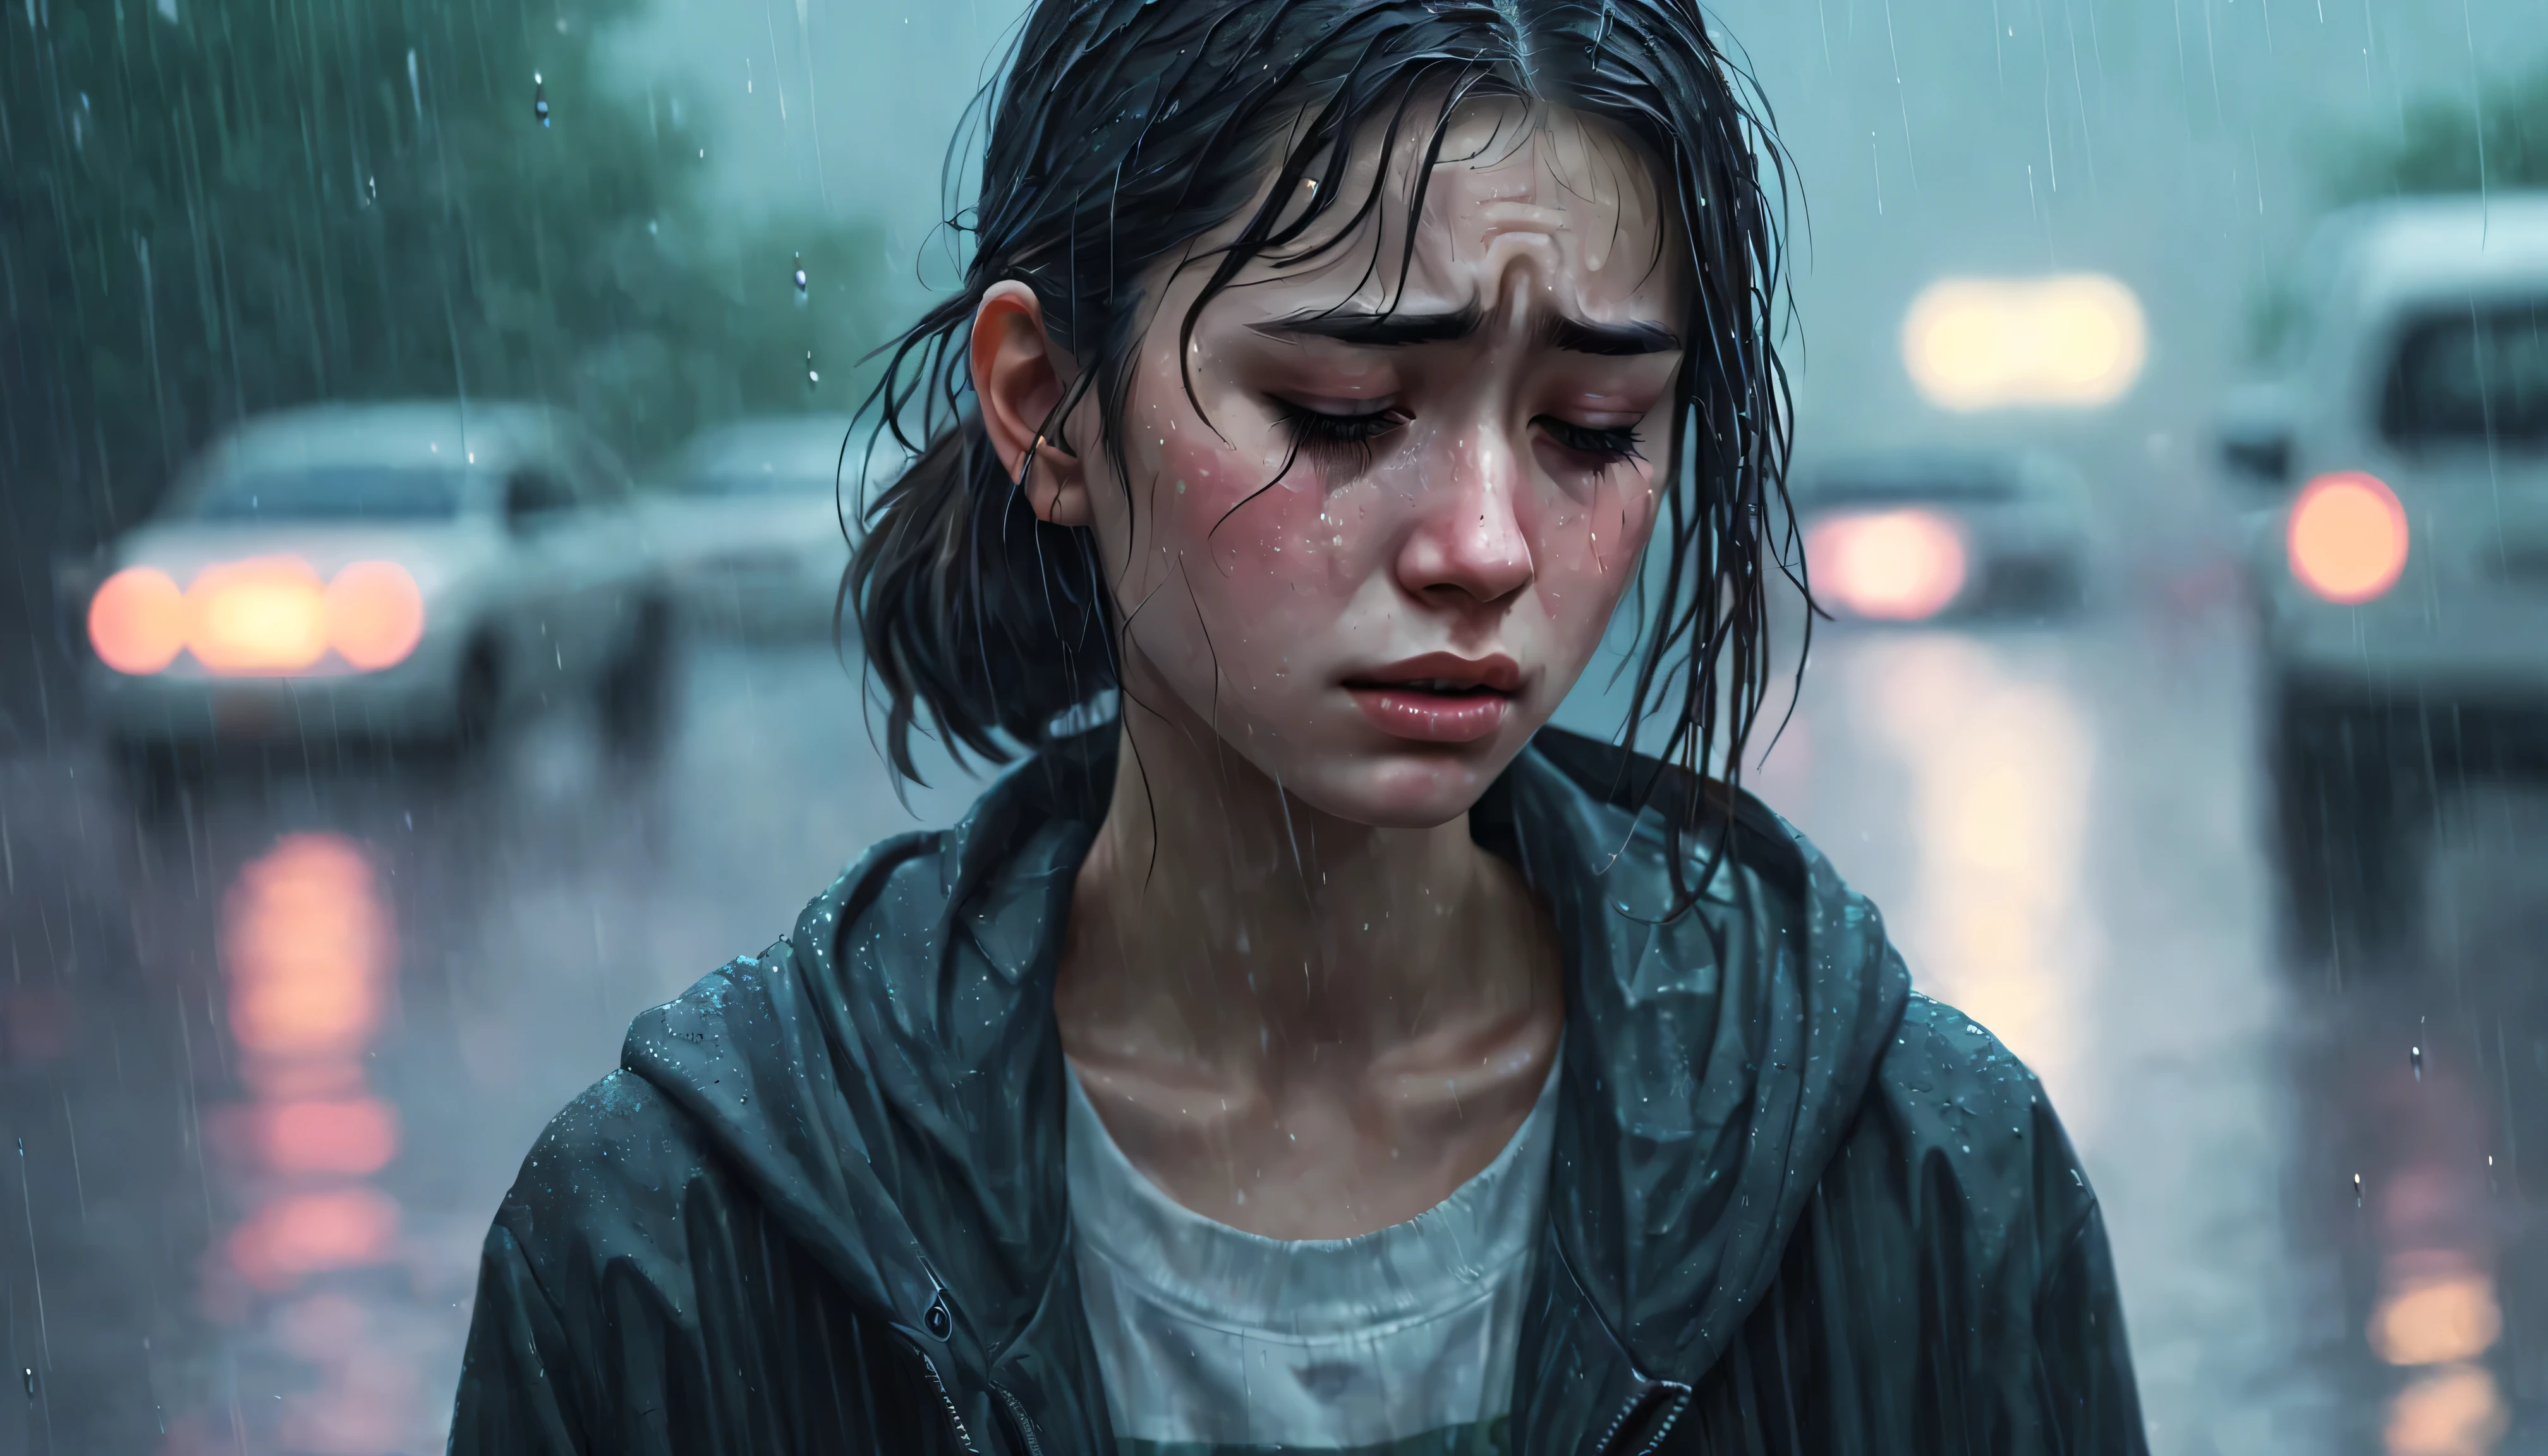 Uma garota chora na chuva melancólica, CENA, retratado em estilo lo-fi onírico no ArtStation. Seu rosto manchado de lágrimas é lindamente capturado., sua tristeza é palpável em gotas suaves, caindo ao redor dela. As sombras da chuva criam uma atmosfera de tristeza agridoce, e a atenção aos detalhes na expressão facial da garota é incrível.. Esta imagem carregada de emoção evoca um sentimento de empatia e introspecção.., demonstração do autor&#39;habilidade e arte.
